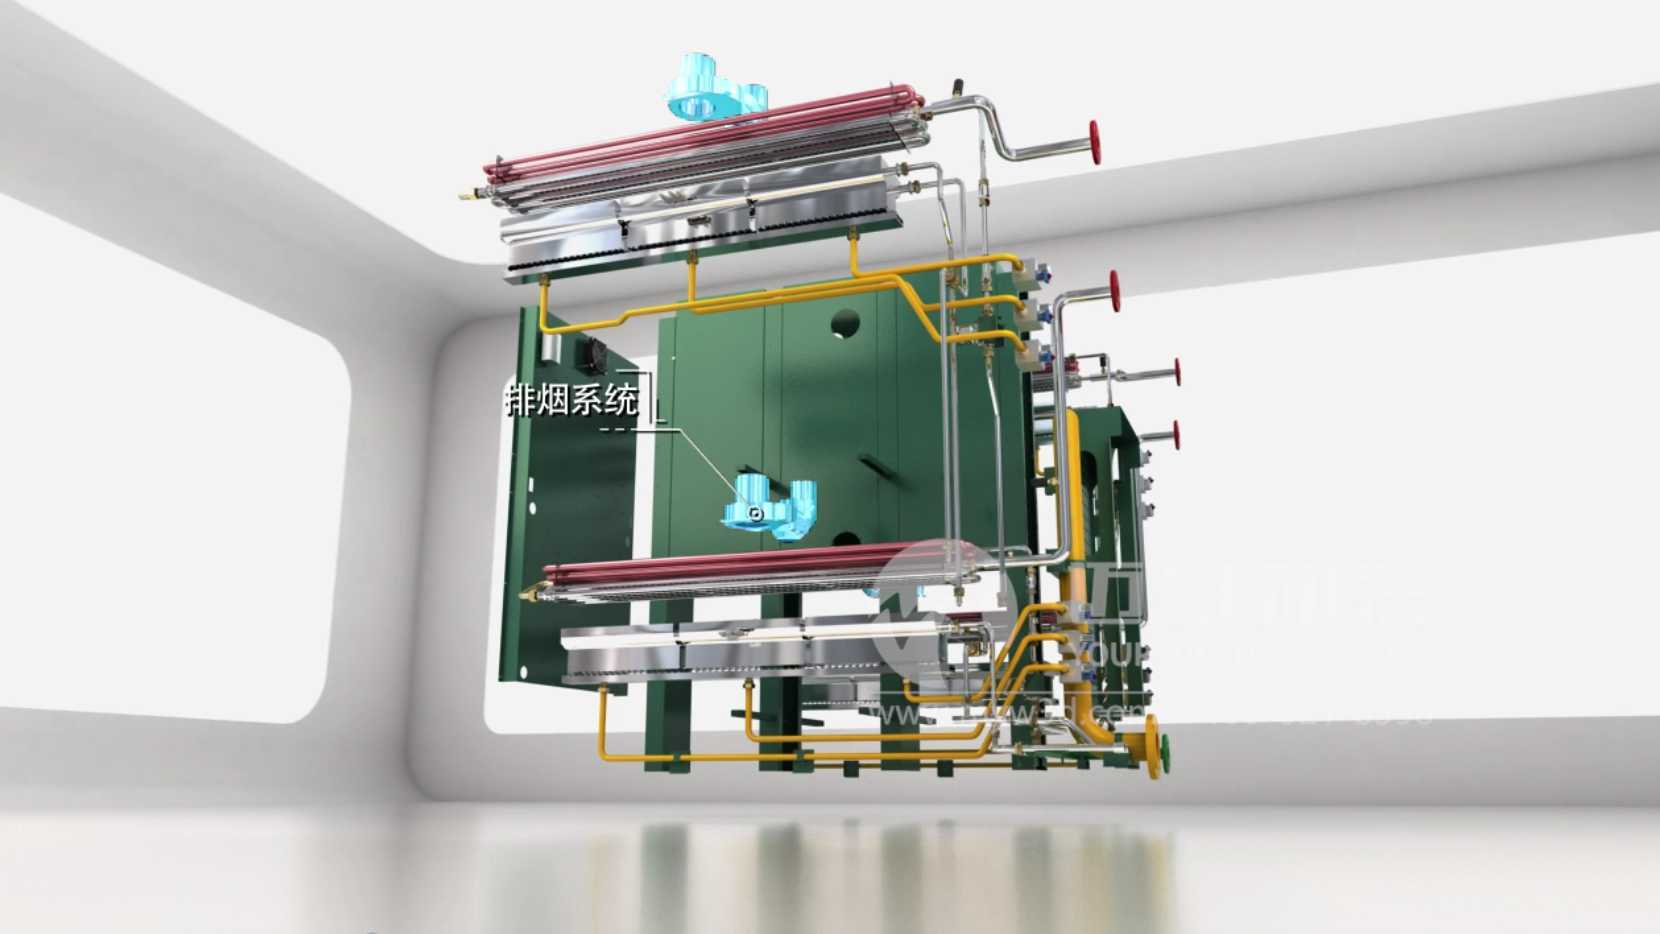 暖通机械设备蒸汽锅炉产品功能演示动画-工业动画制作公司